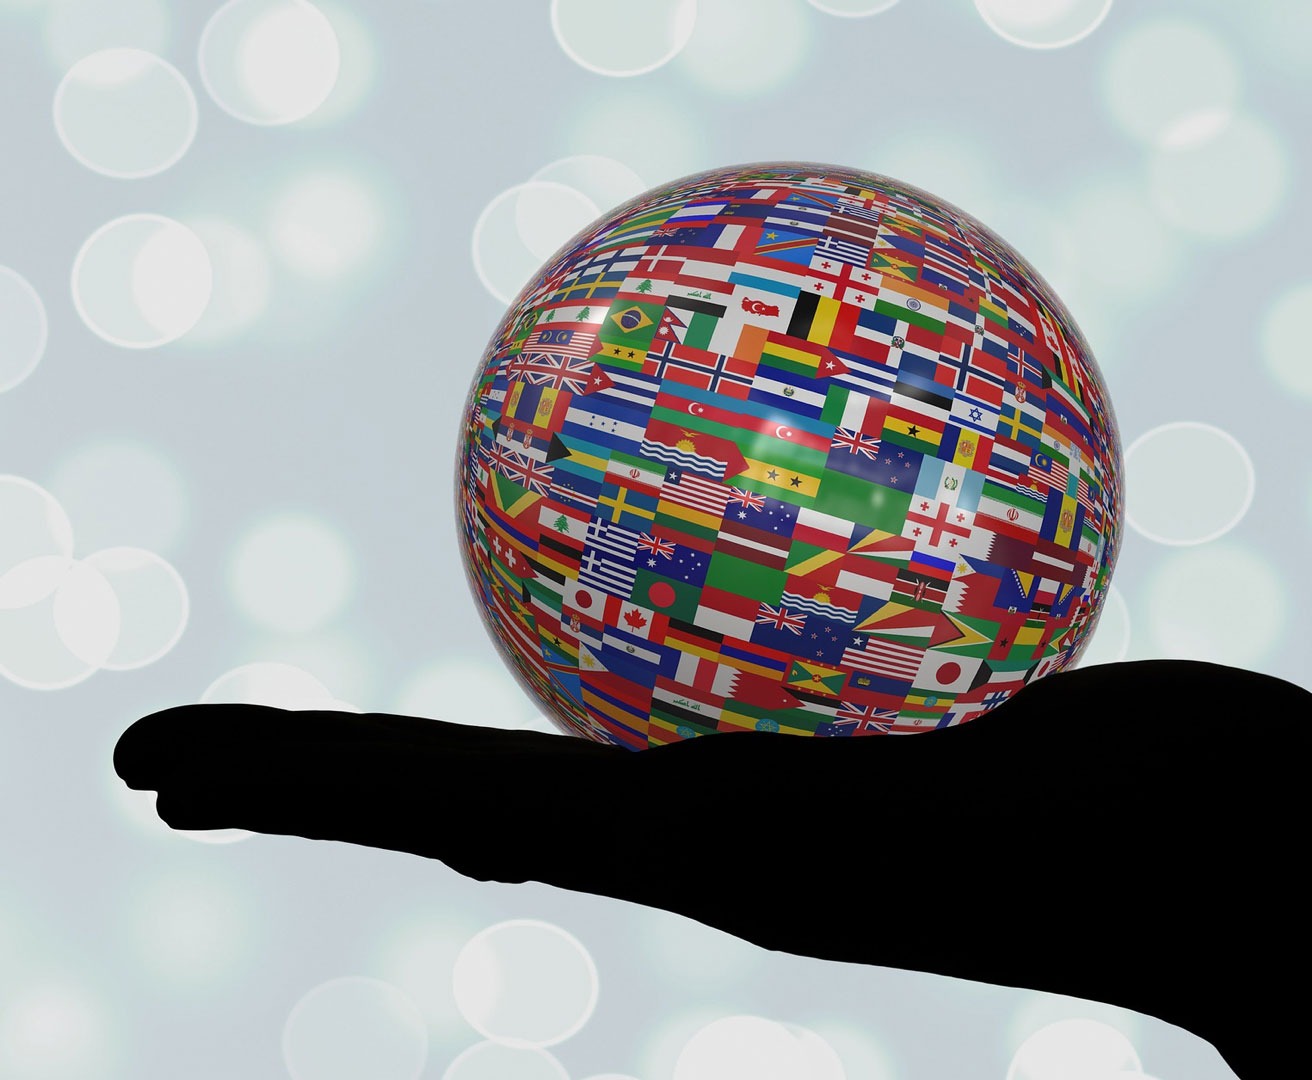 Ausgestreckte Hand im Schatten mit Ball in der Hand, welcher vollständig mit unterschiedlichen kleinen Landesflaggen bedeckt ist, als Symbol für die Vielfalt der Sprachen